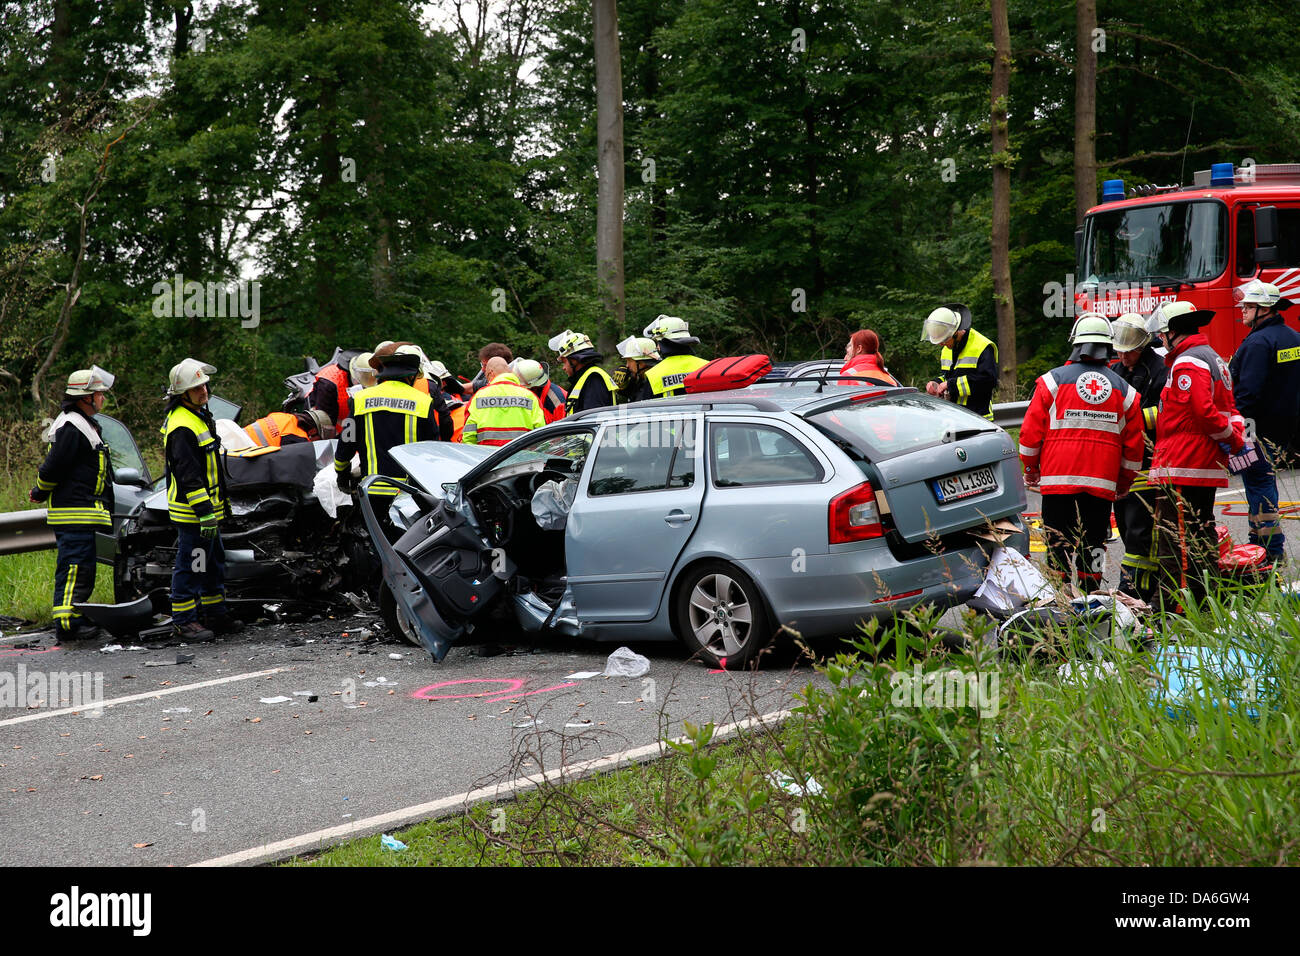 Los trabajadores de rescate del cuerpo de bomberos y la Cruz Roja Alemana en acción en un accidente de tráfico en la carretera federal 327 Foto de stock